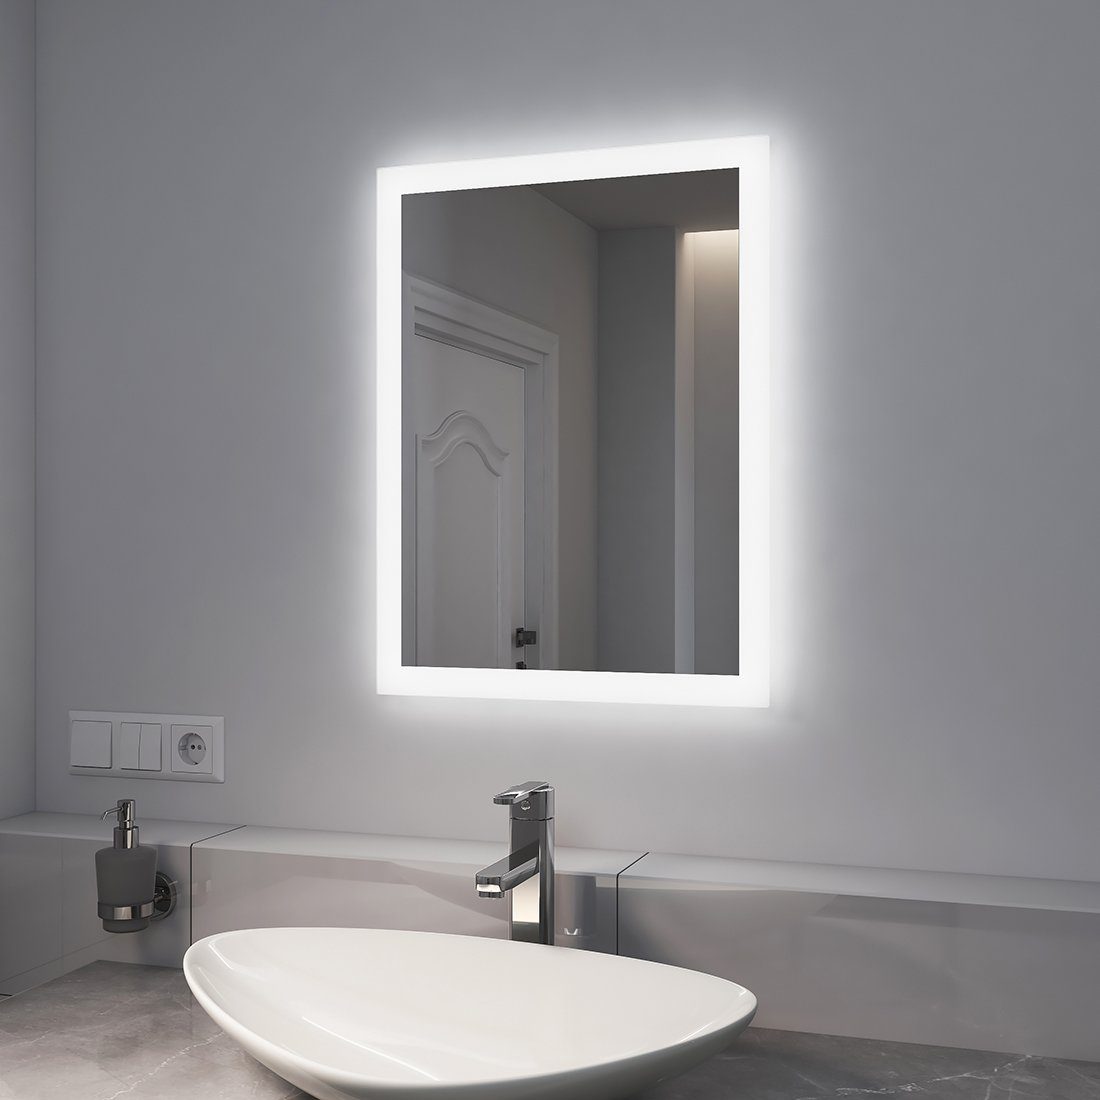 EMKE Badspiegel LED Badspiegel mit Wandspiegel, Beschlagfrei, mit Lichtfarbe Beleuchtung 2 Warmweiß/Kaltweiß Badezimmerspiegel